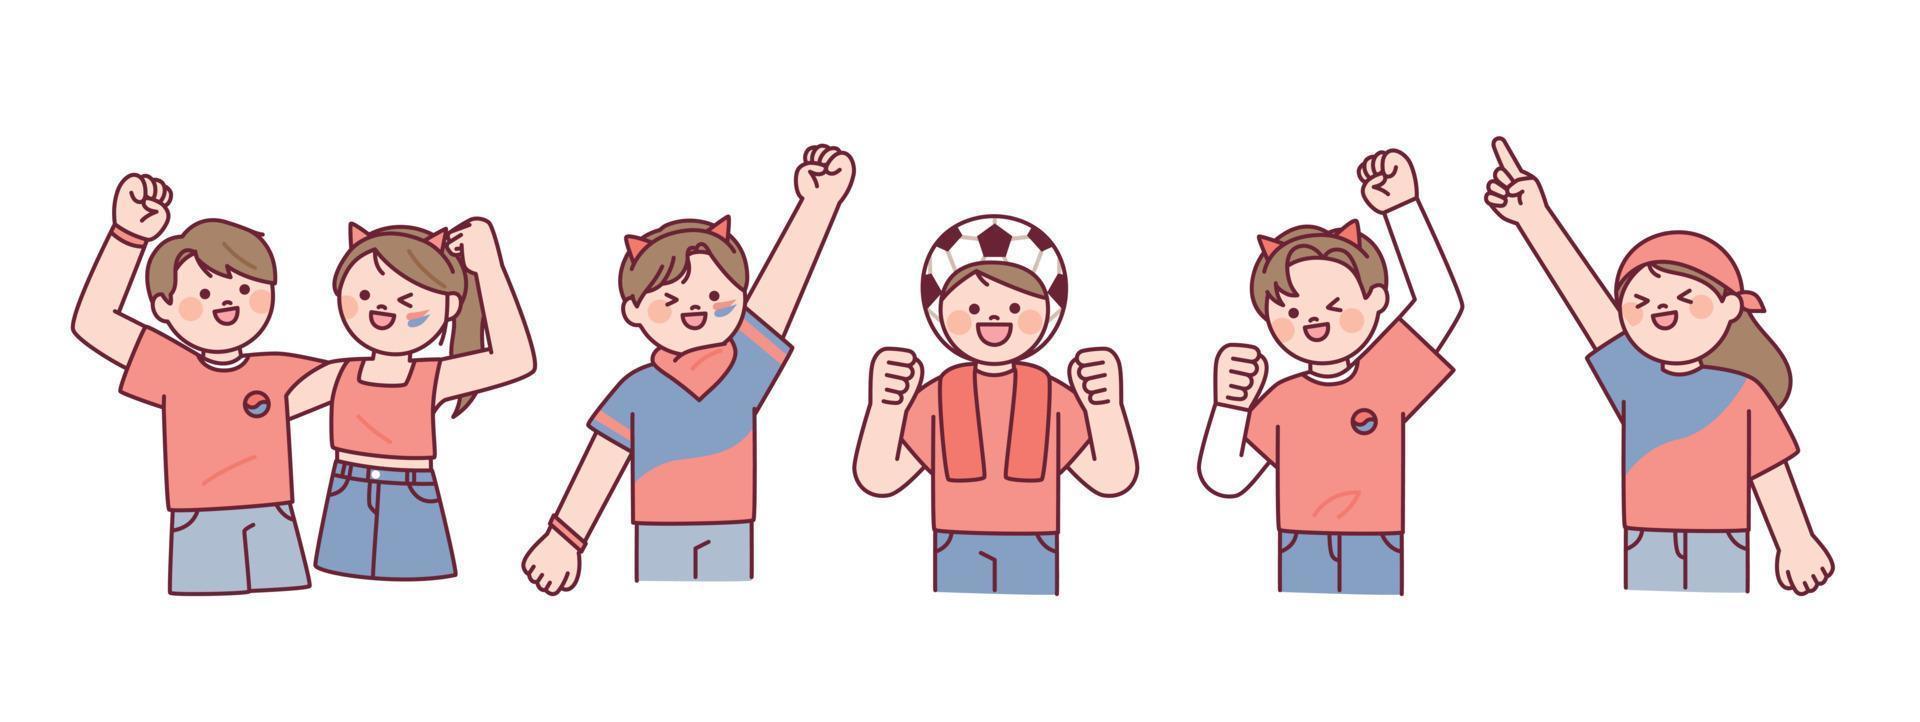 Koreaans Amerikaans voetbal juichen team rood duivels. mensen in rood t-shirts zijn juichen met hun handen omhoog. vector